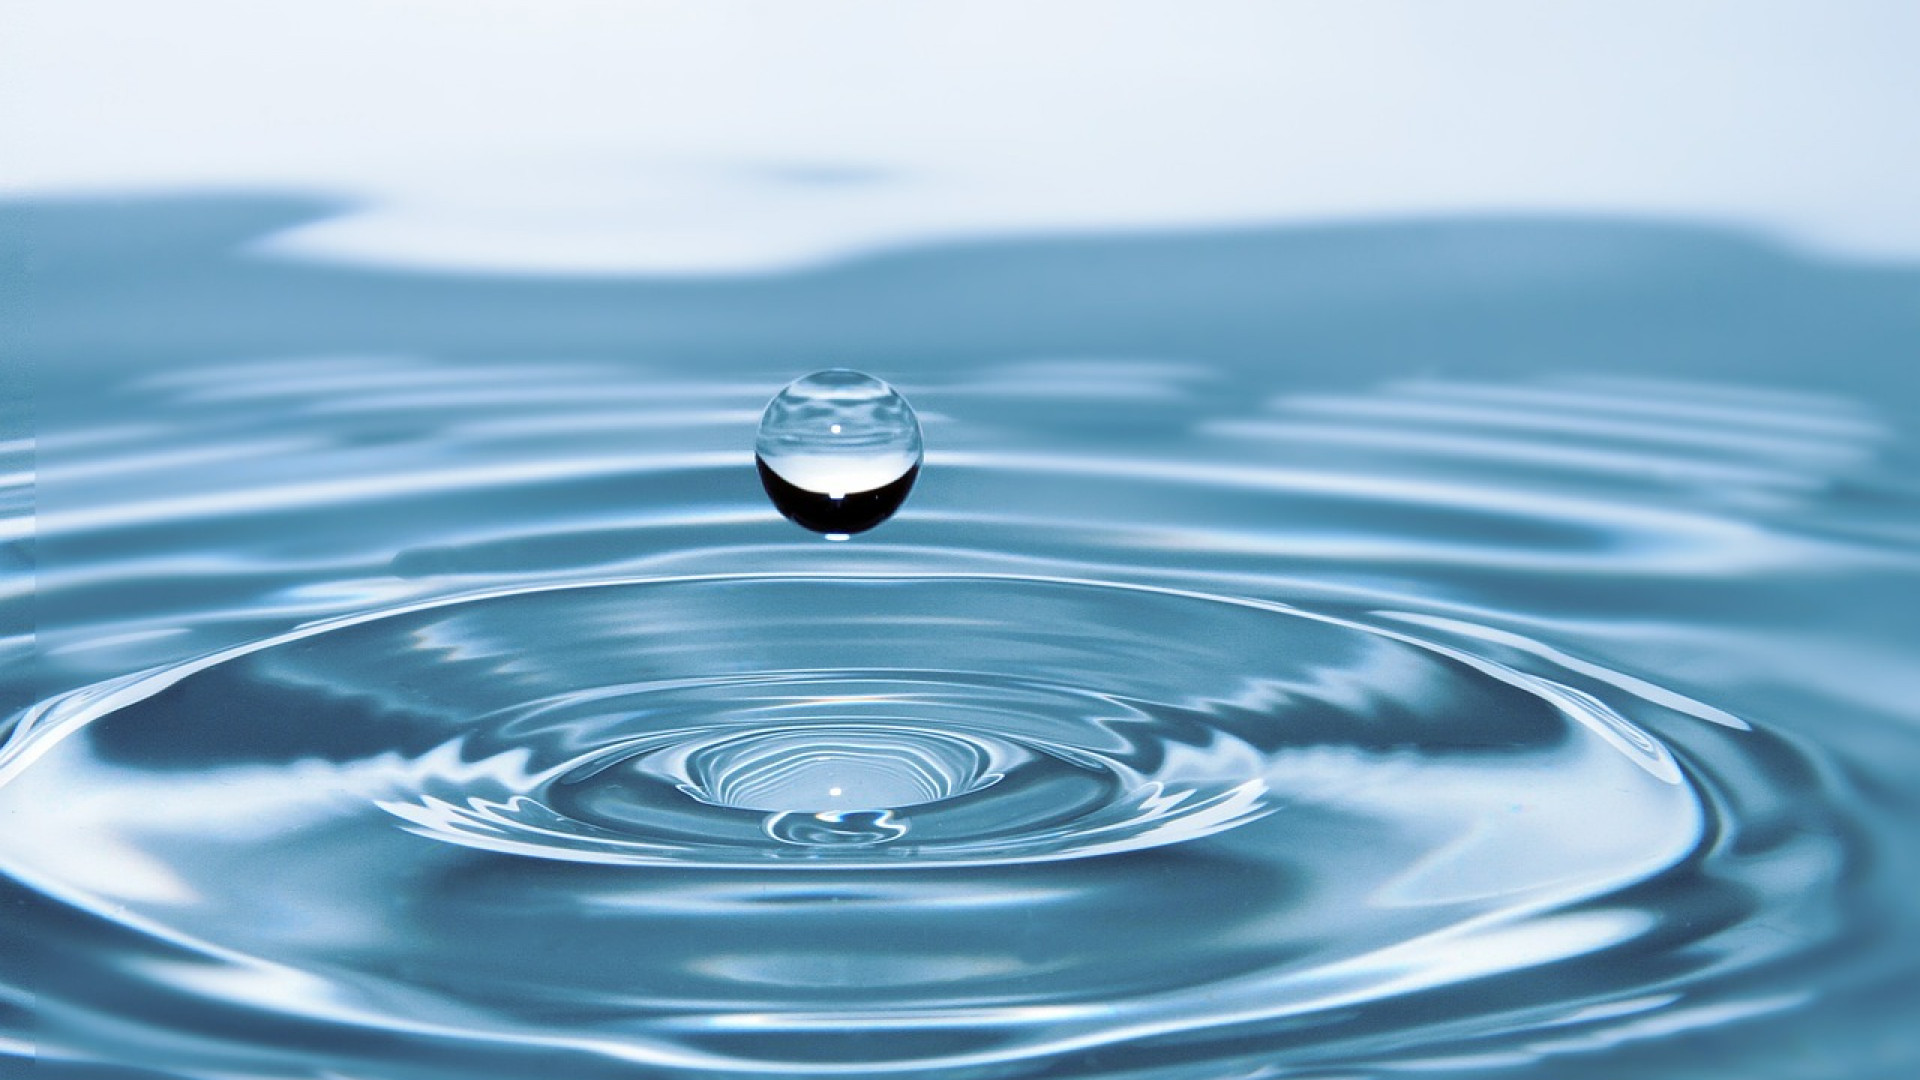 Installer un adoucisseur d'eau : quels avantages ?